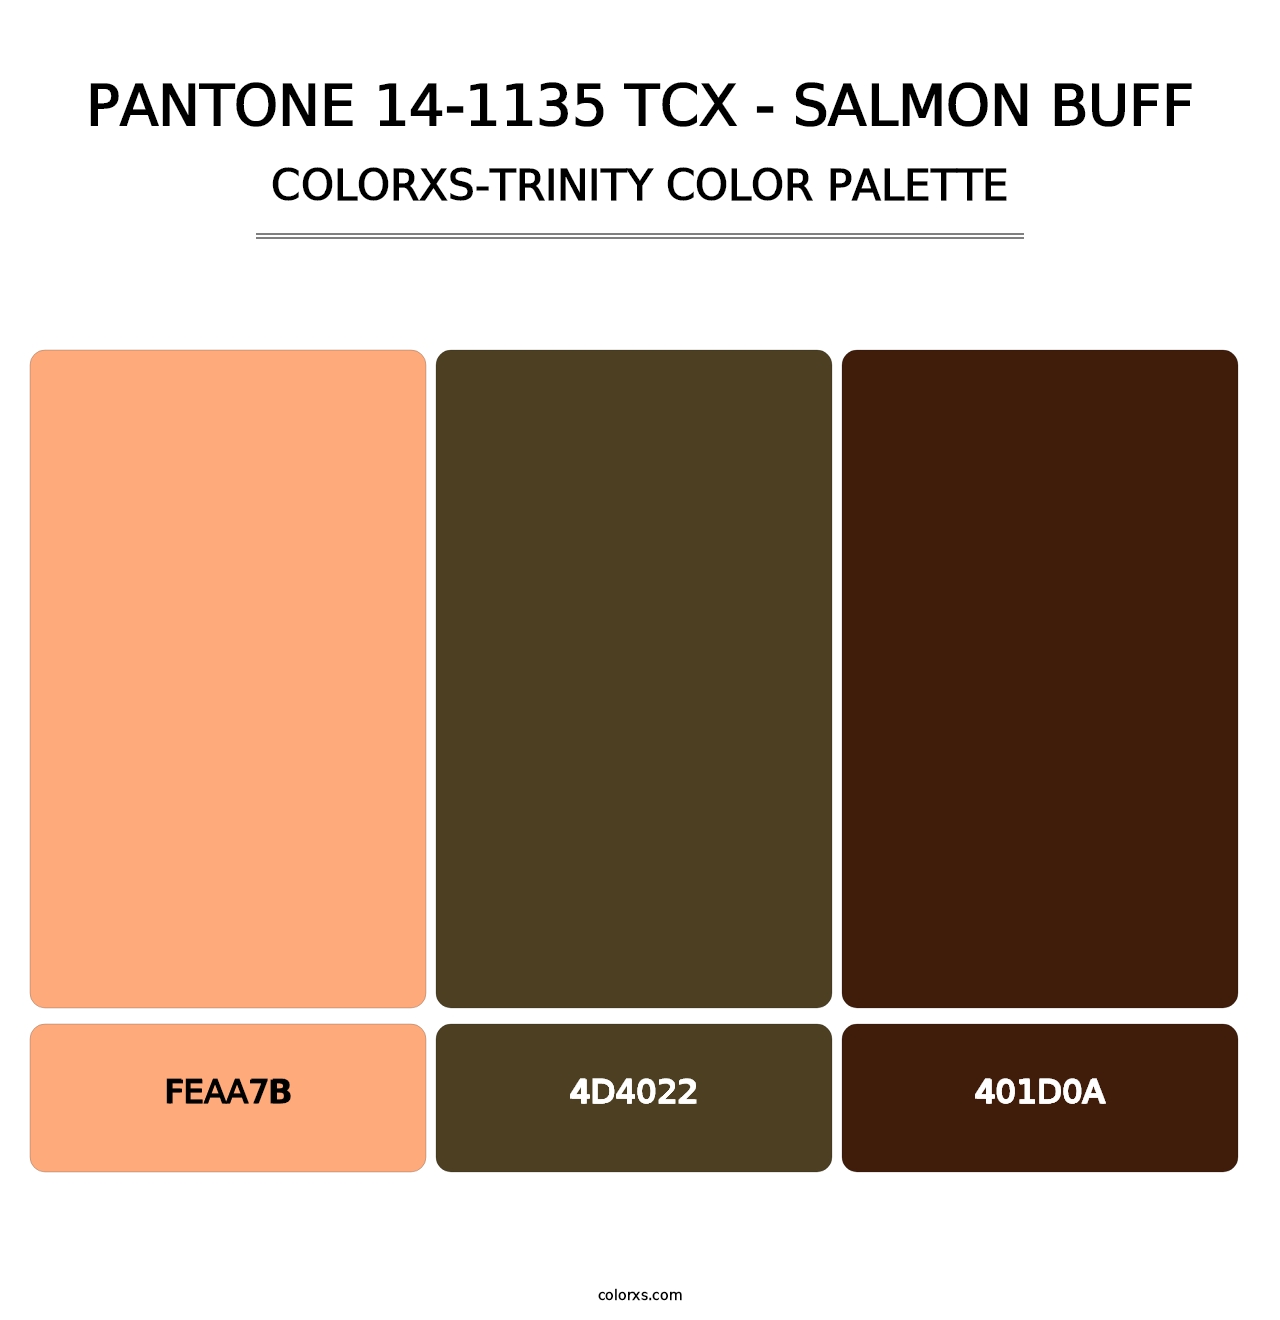 PANTONE 14-1135 TCX - Salmon Buff - Colorxs Trinity Palette